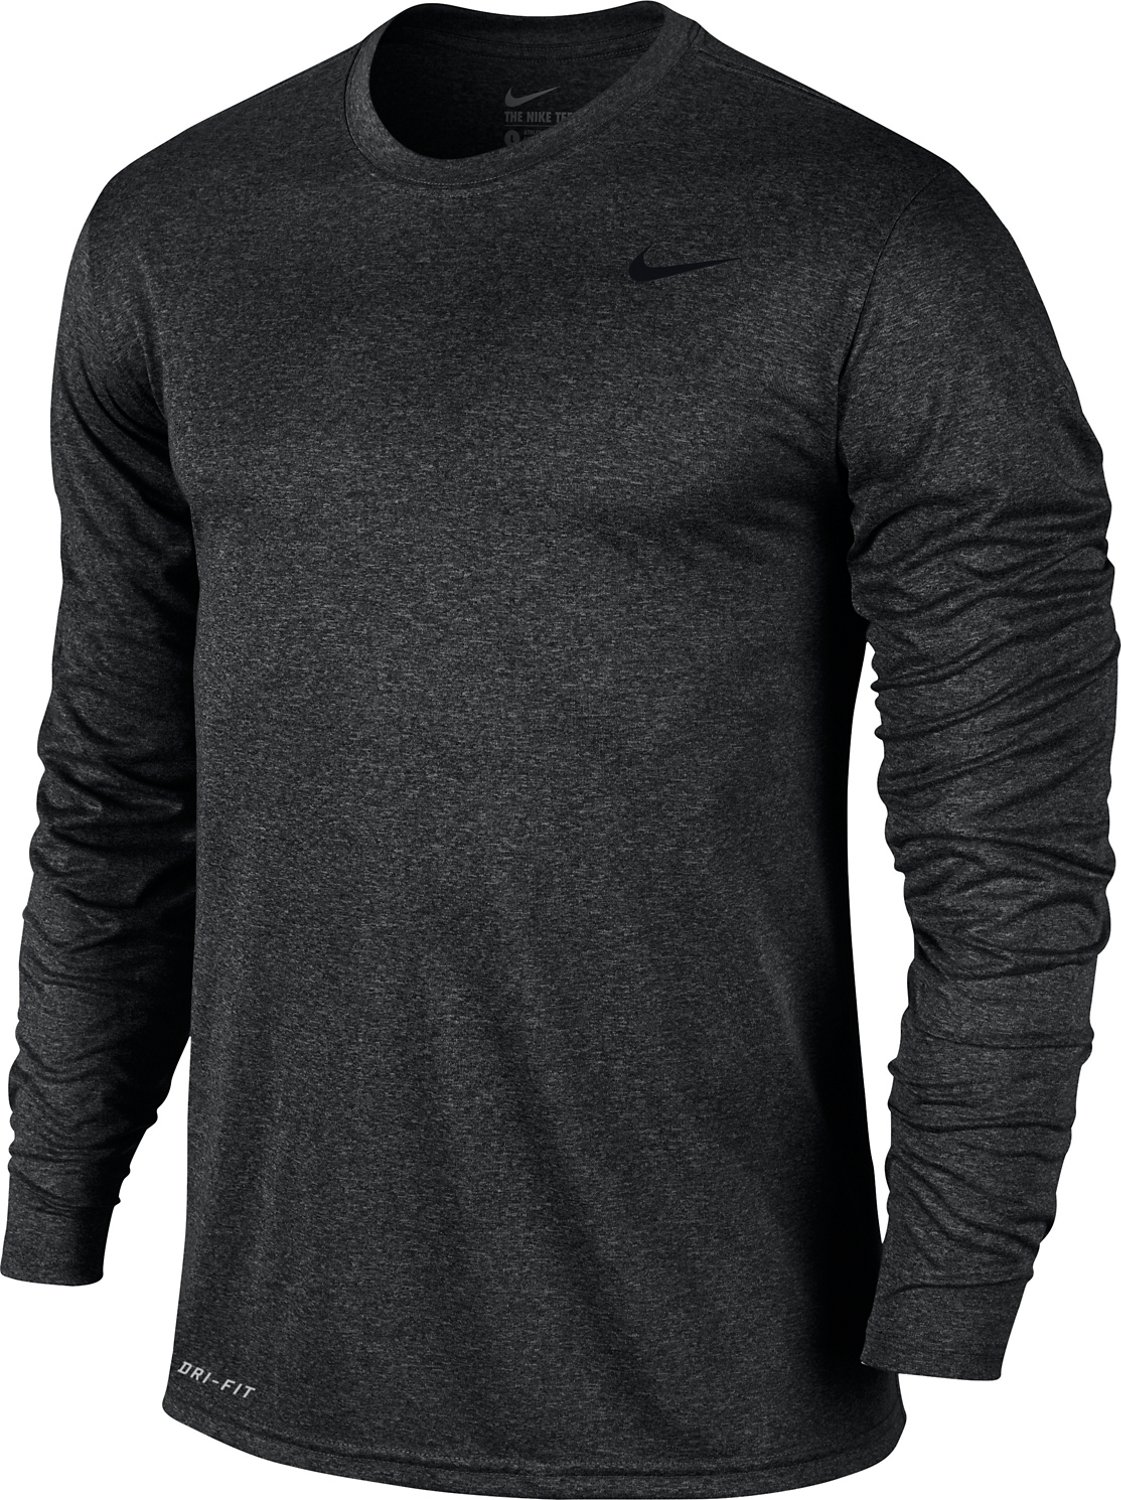 Zich verzetten tegen Ophef kleermaker Nike Men's Legend 2.0 Training Long Sleeve Shirt | Academy